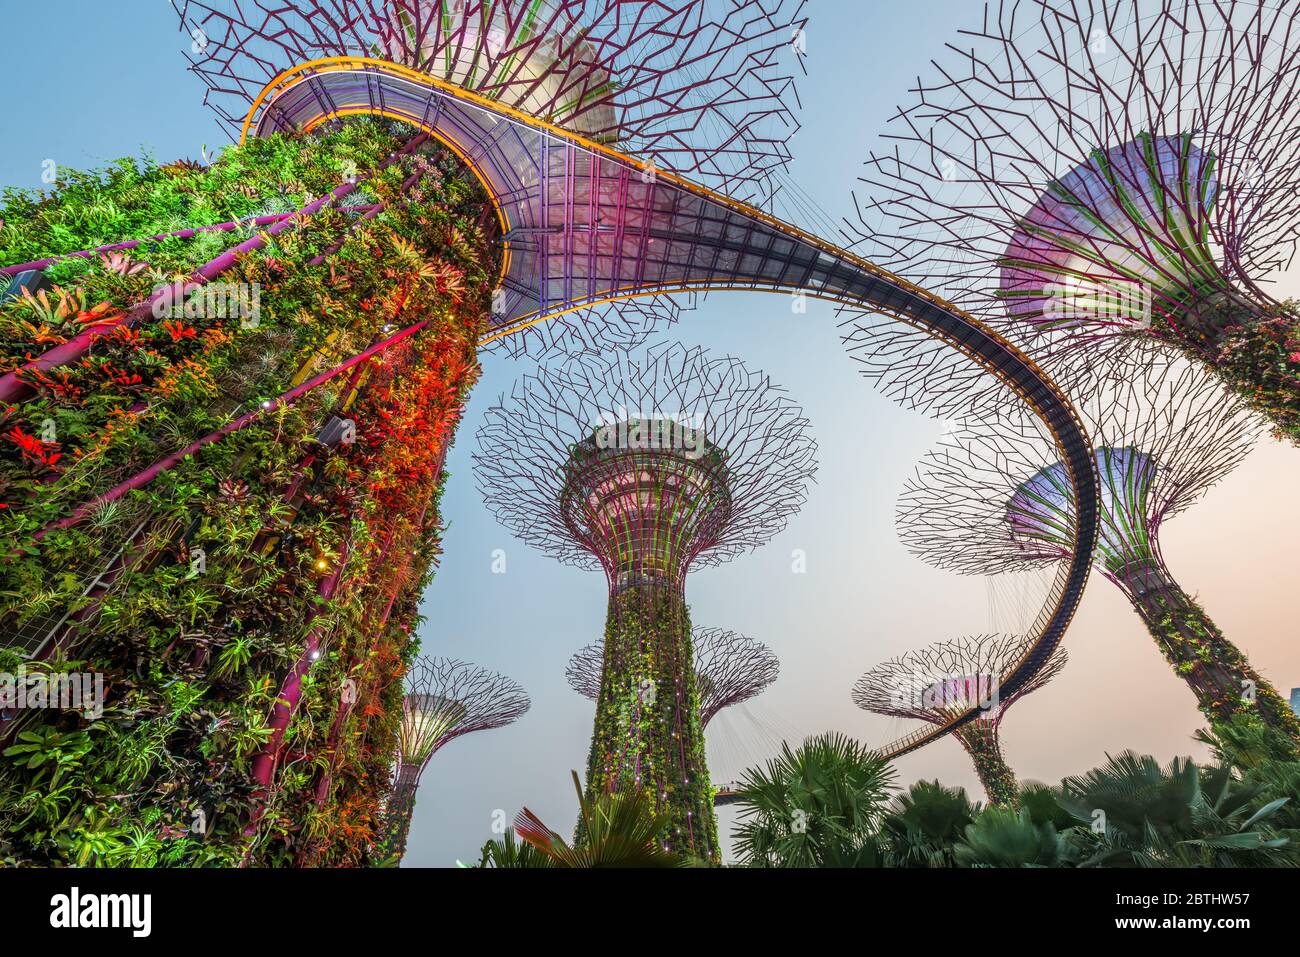 Singapour - septembre 5, 2015 : Supertrees dans les jardins de la baie. L'arbre-comme les structures sont équipés de technologies environnementales qui imitent les ce Banque D'Images